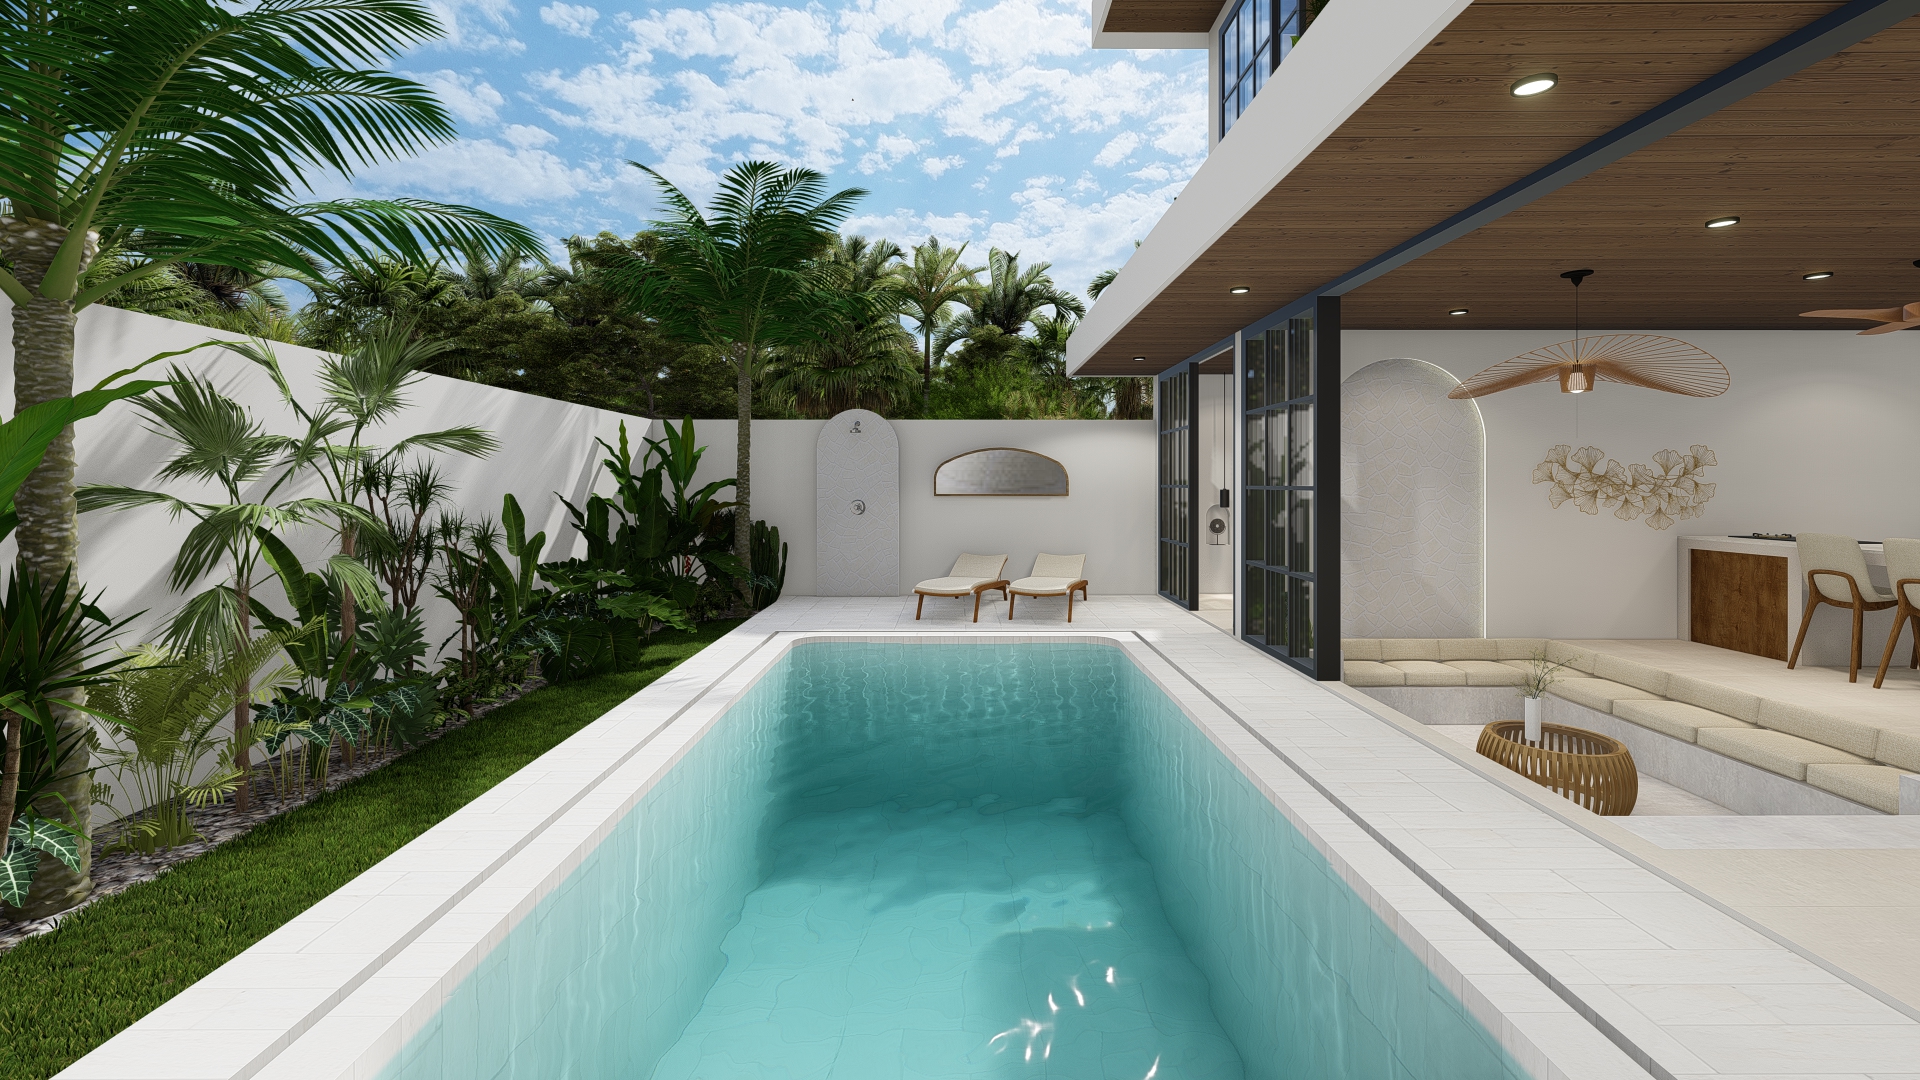 The Meridian 4 bedroom villas in Mediterranean style in Canggu Bali